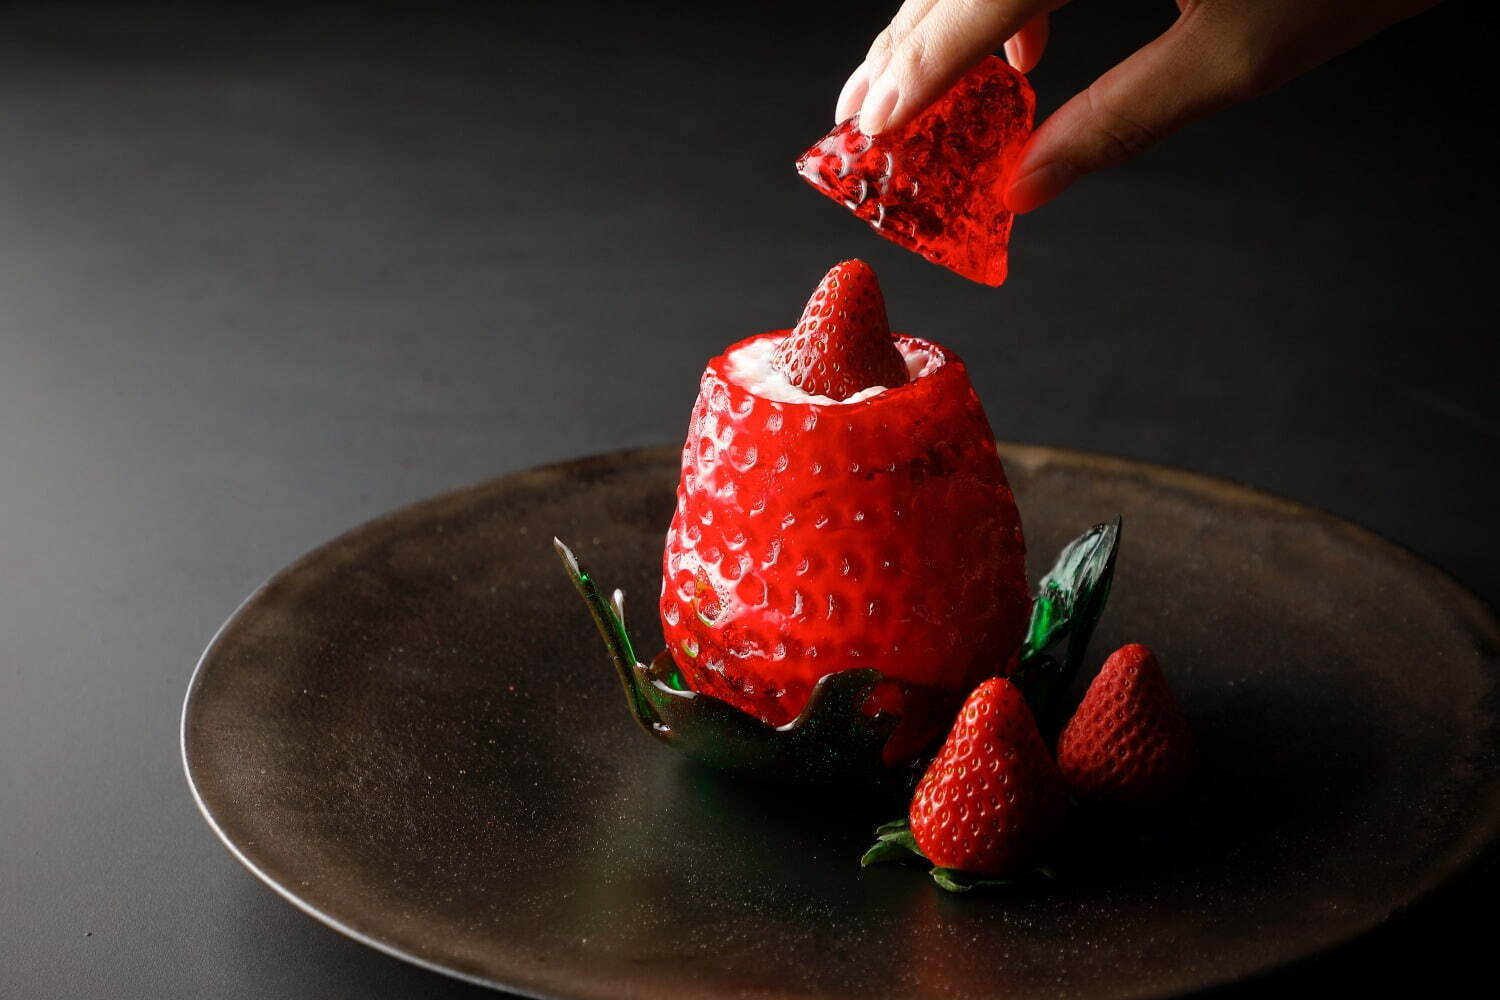 「苺 Art of Strawberry」 7,000円
※サービス料込み。
※ウエルカムドリンク、苺のミニパンケーキ付き